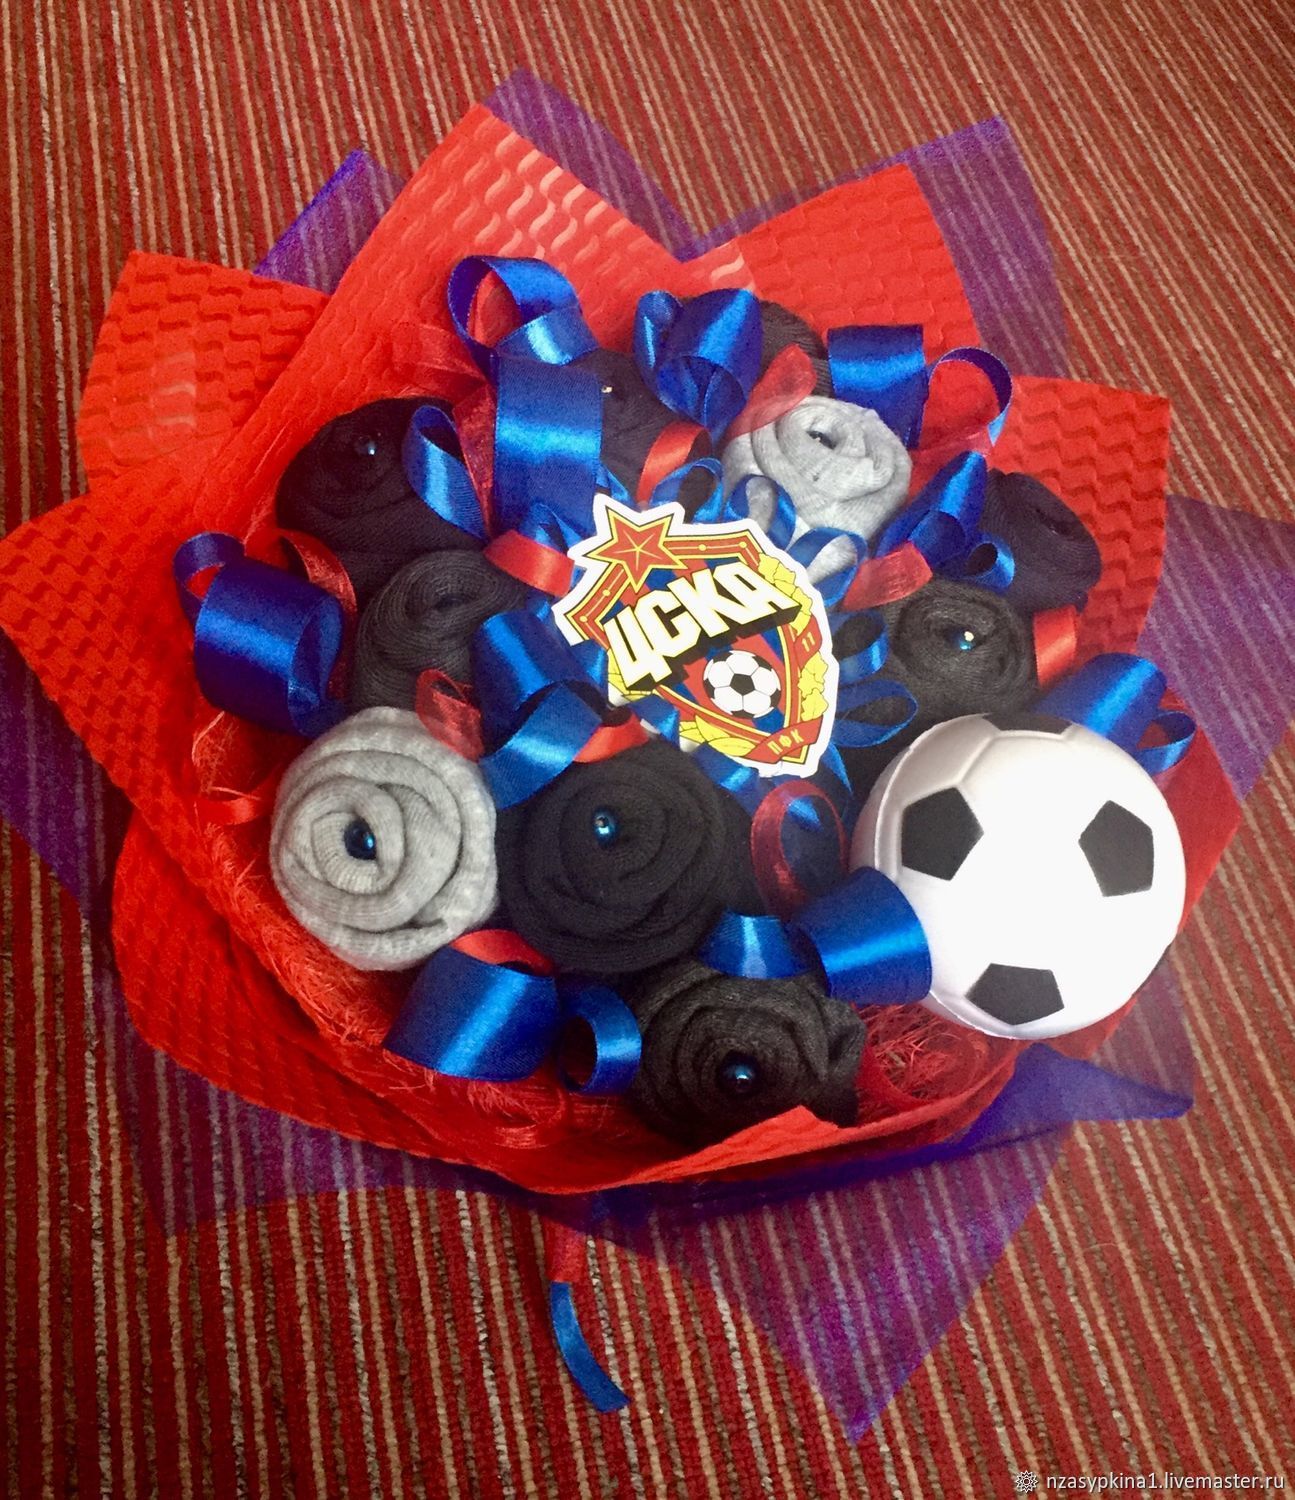 Что подарить другу который любит футбол. Подарки на 23 февраля мальчикам. Подарки на футбольную тематику. Конфетные подарки для мальчика футбольный мяч. Оригинальный букет для мальчика.